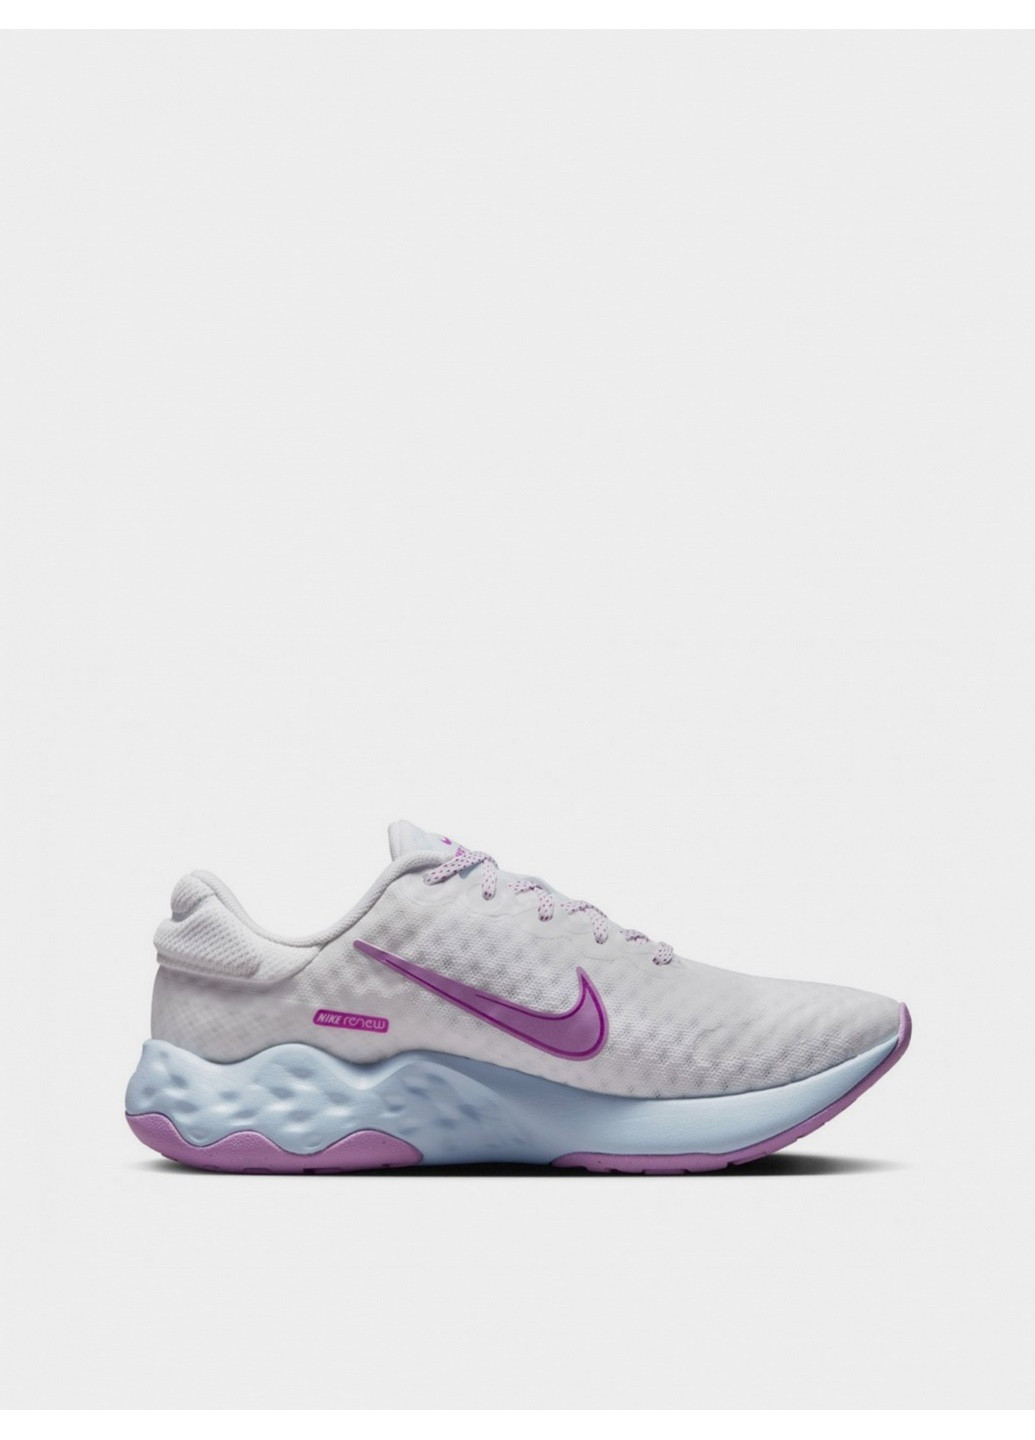 Фиолетовые демисезонные женские беговые кроссовки renew ride 3 dc8184-102 Nike